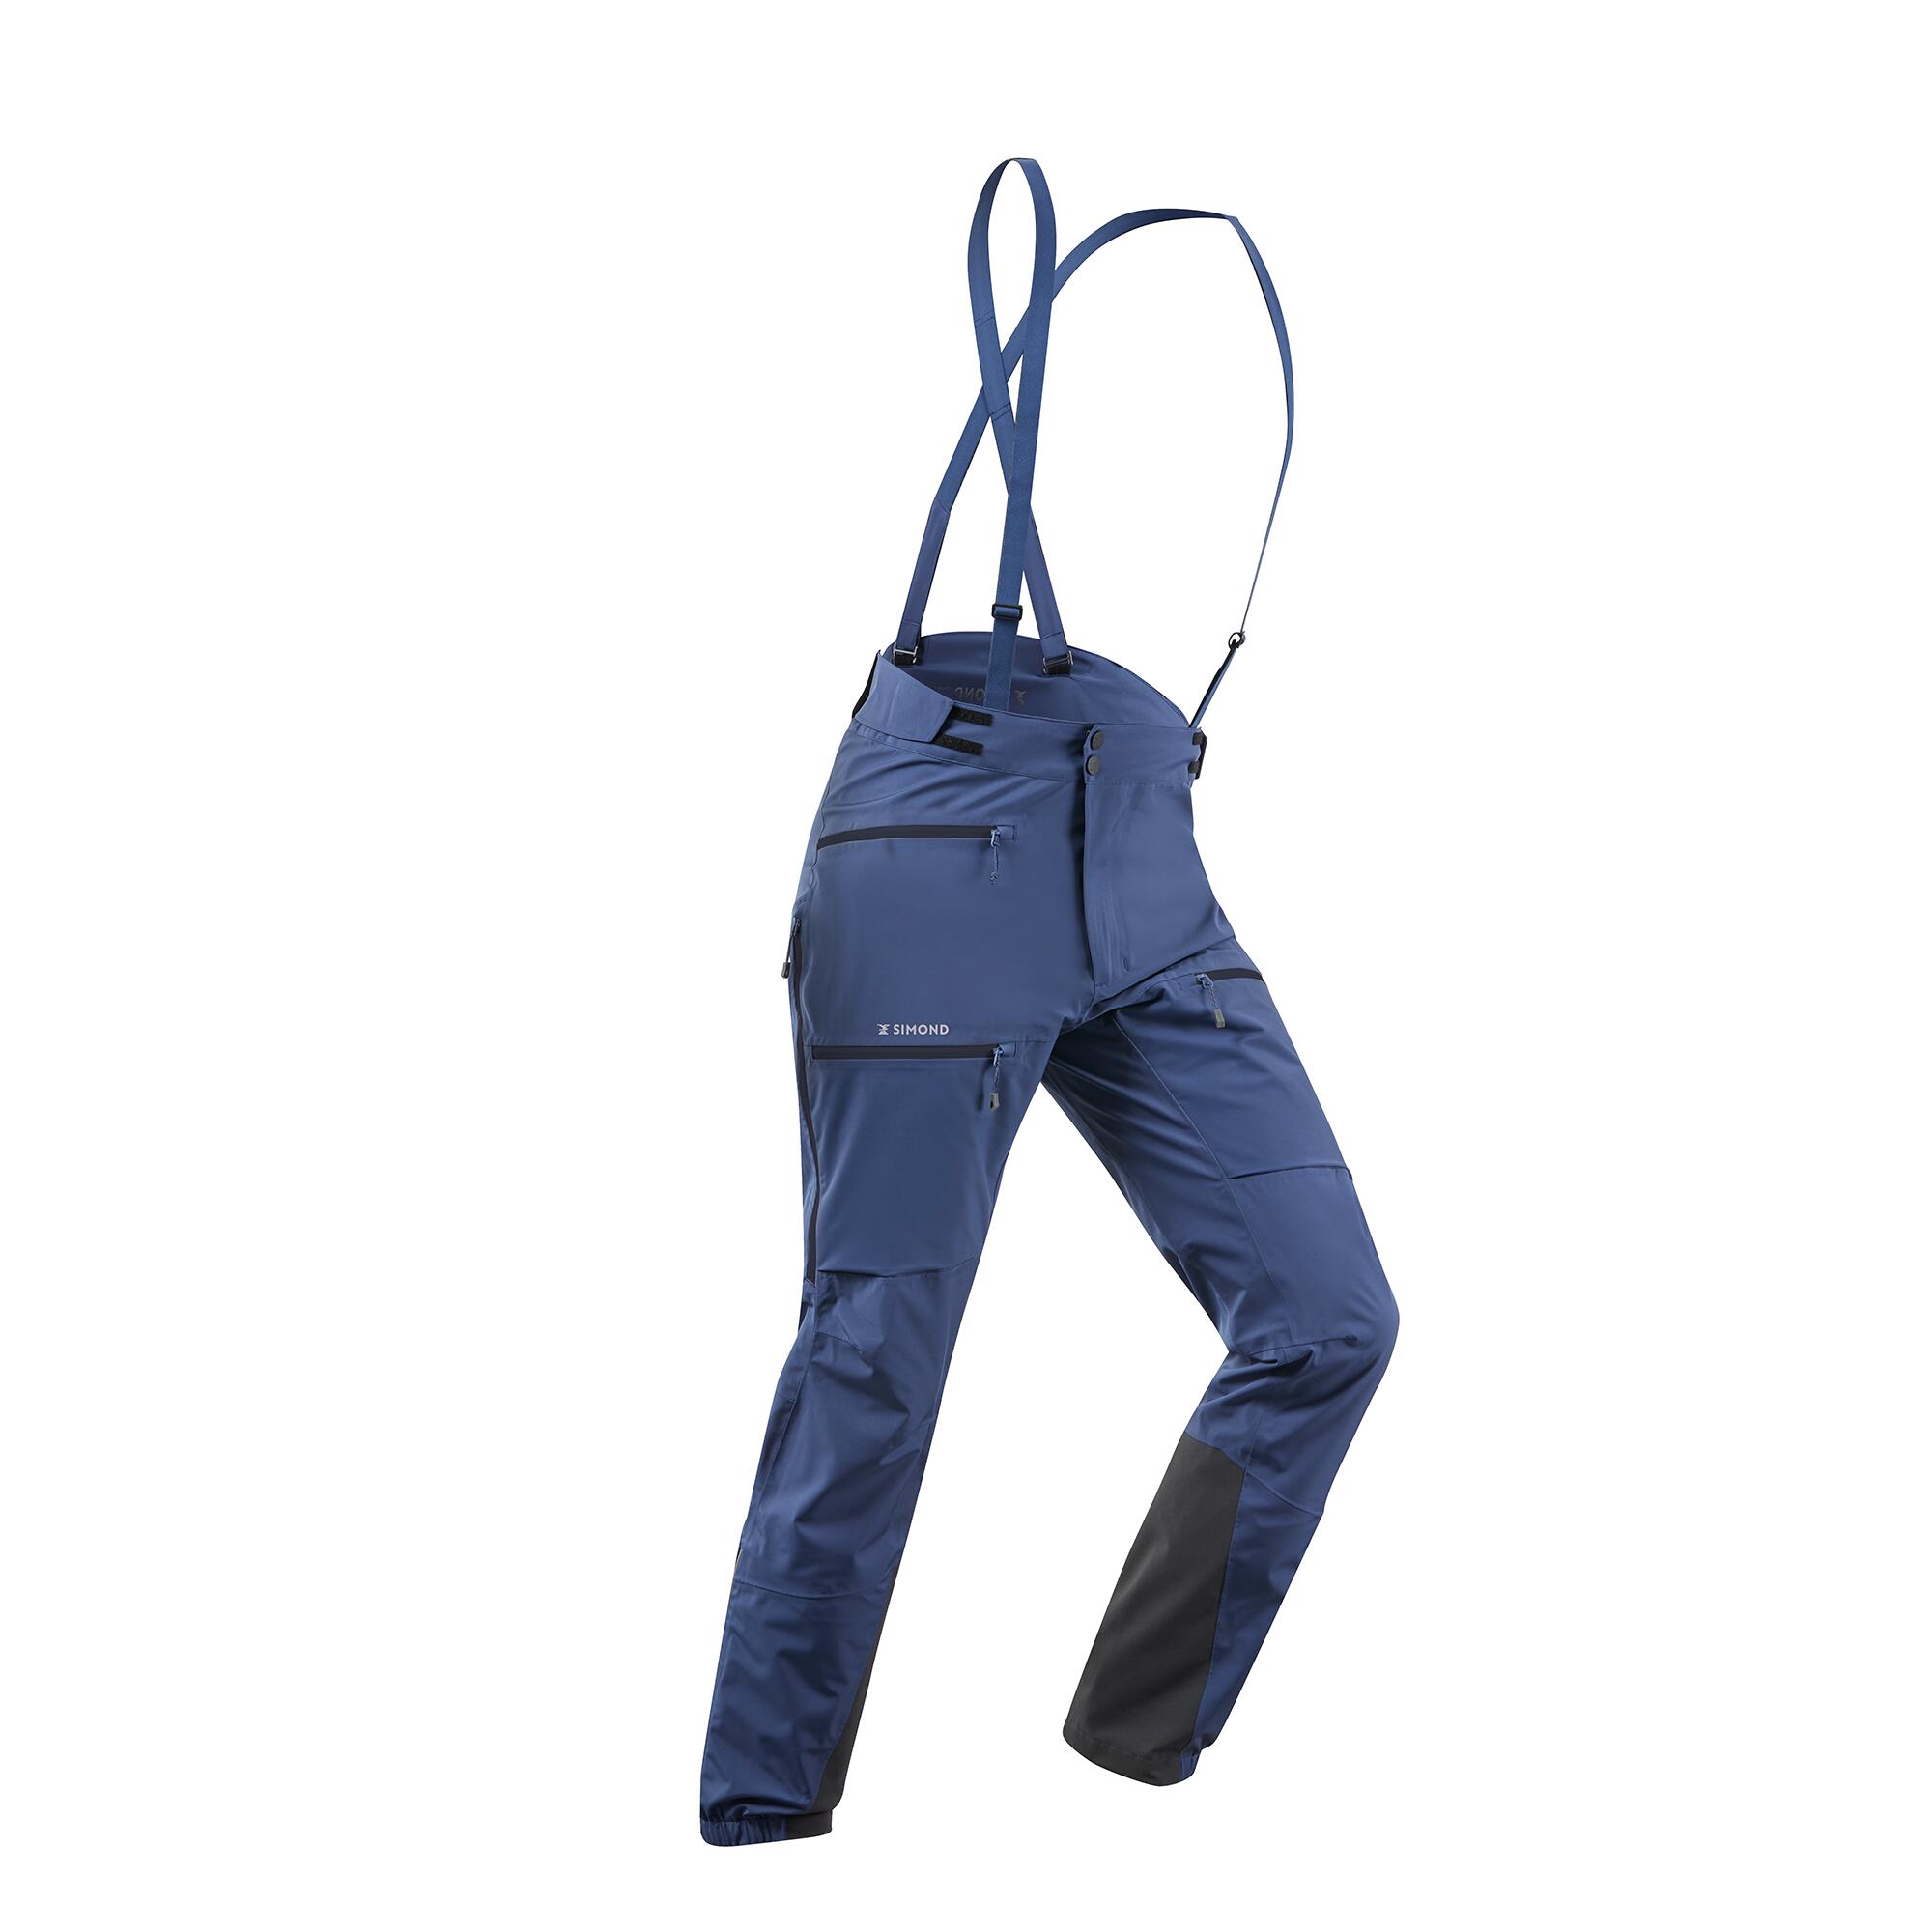 Pantalon Impermeabil Alpinism Ice Albastru Dama